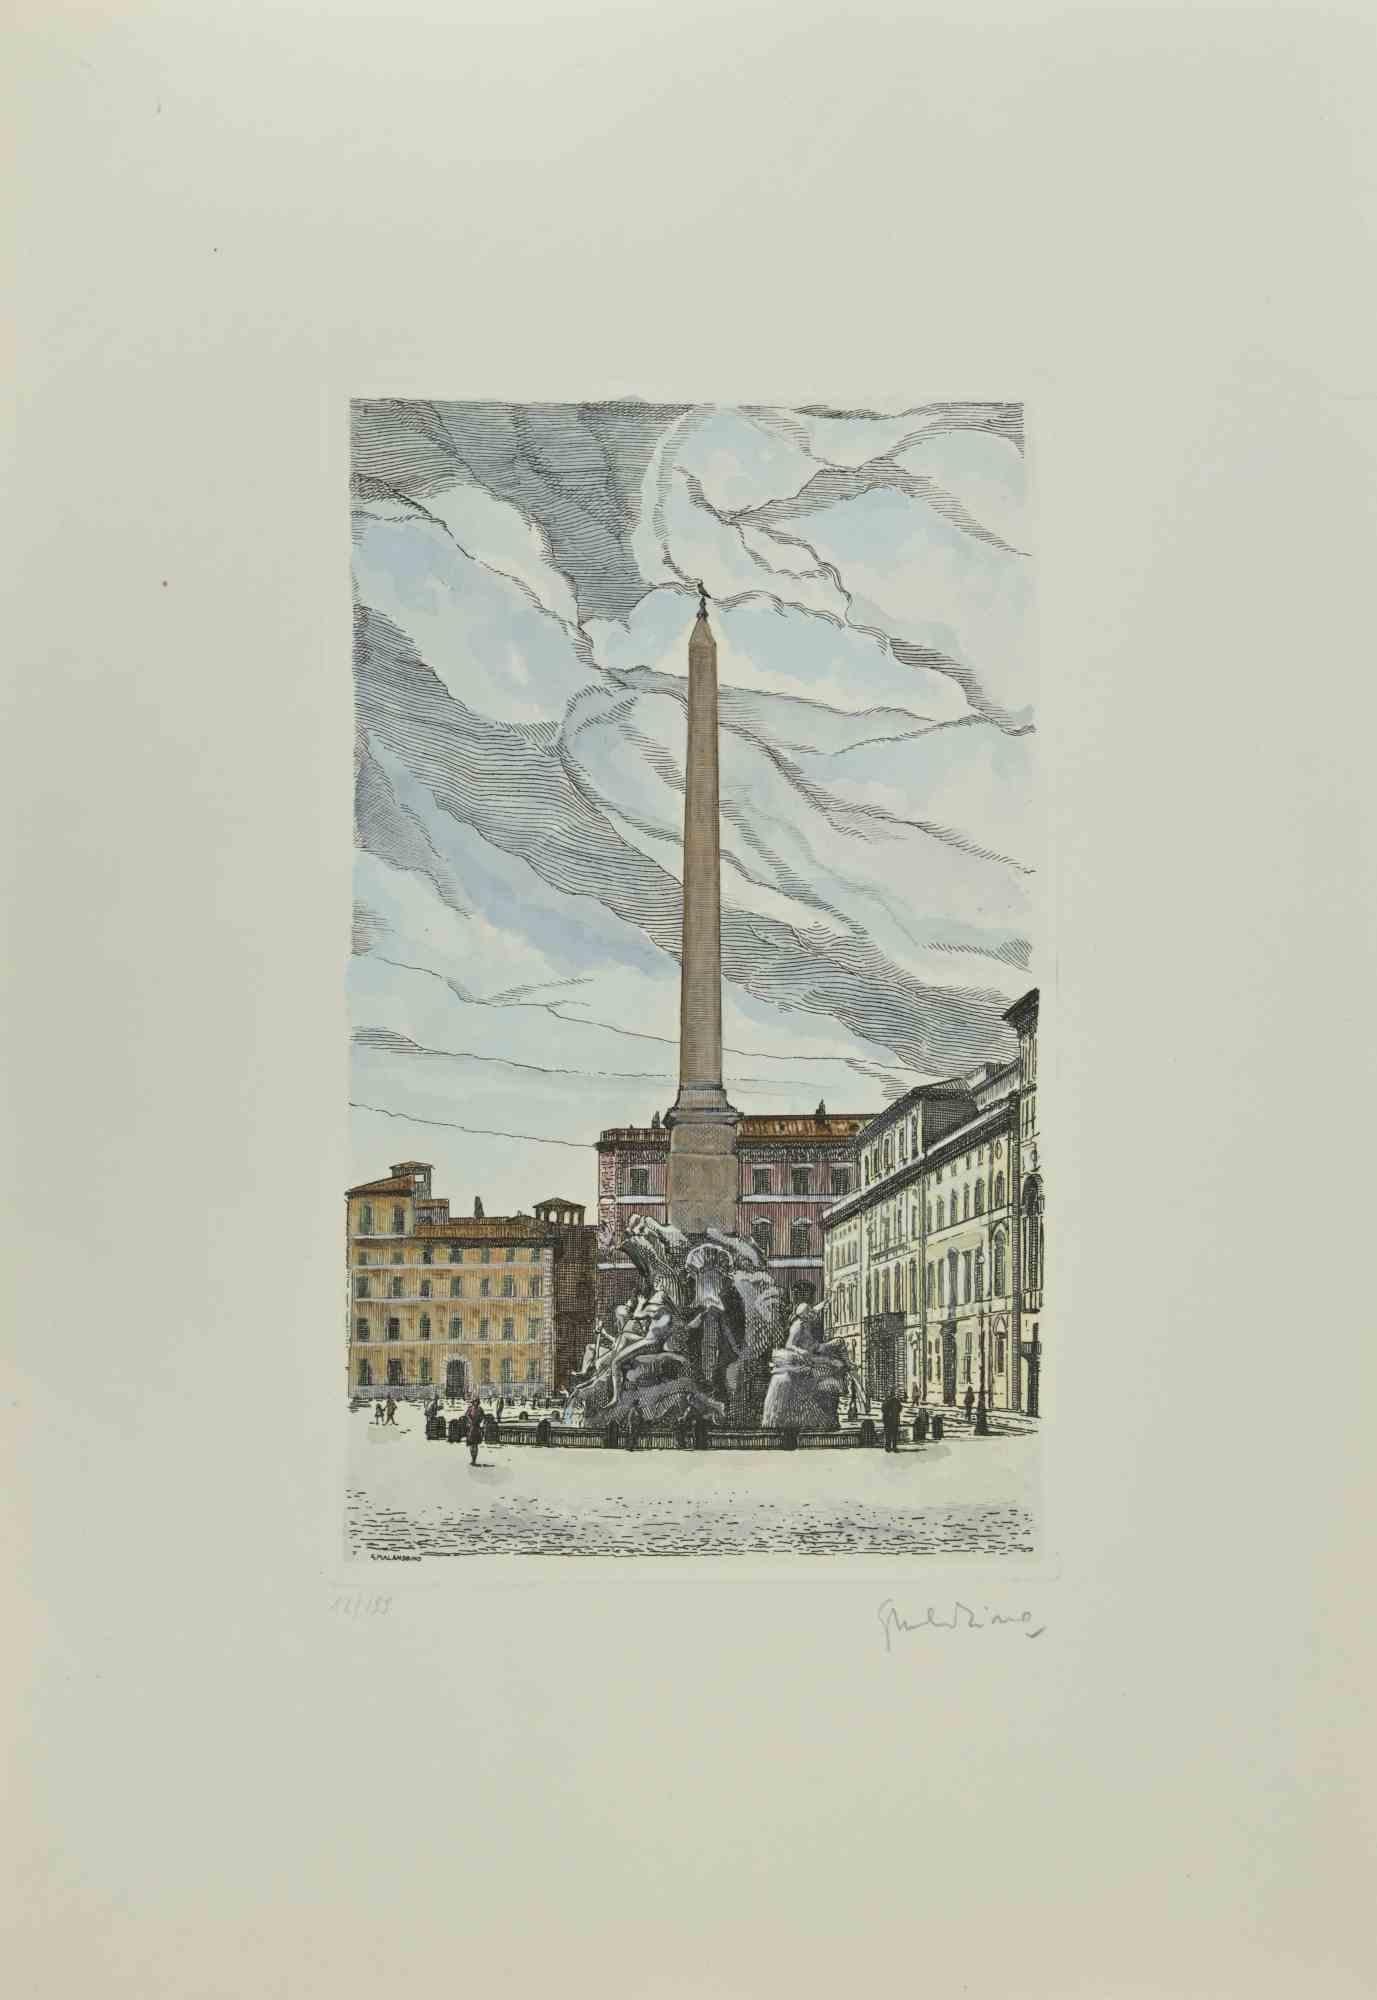 Fontana dei Quattro Fiumi ist ein Kunstwerk von Giuseppe Malandrino.

Originaldruck in Ätztechnik.

Vom Künstler in der rechten unteren Ecke mit Bleistift handsigniert.

Nummerierte Ausgabe Nr. 12/199 in der unteren linken Ecke

Gute Bedingungen.